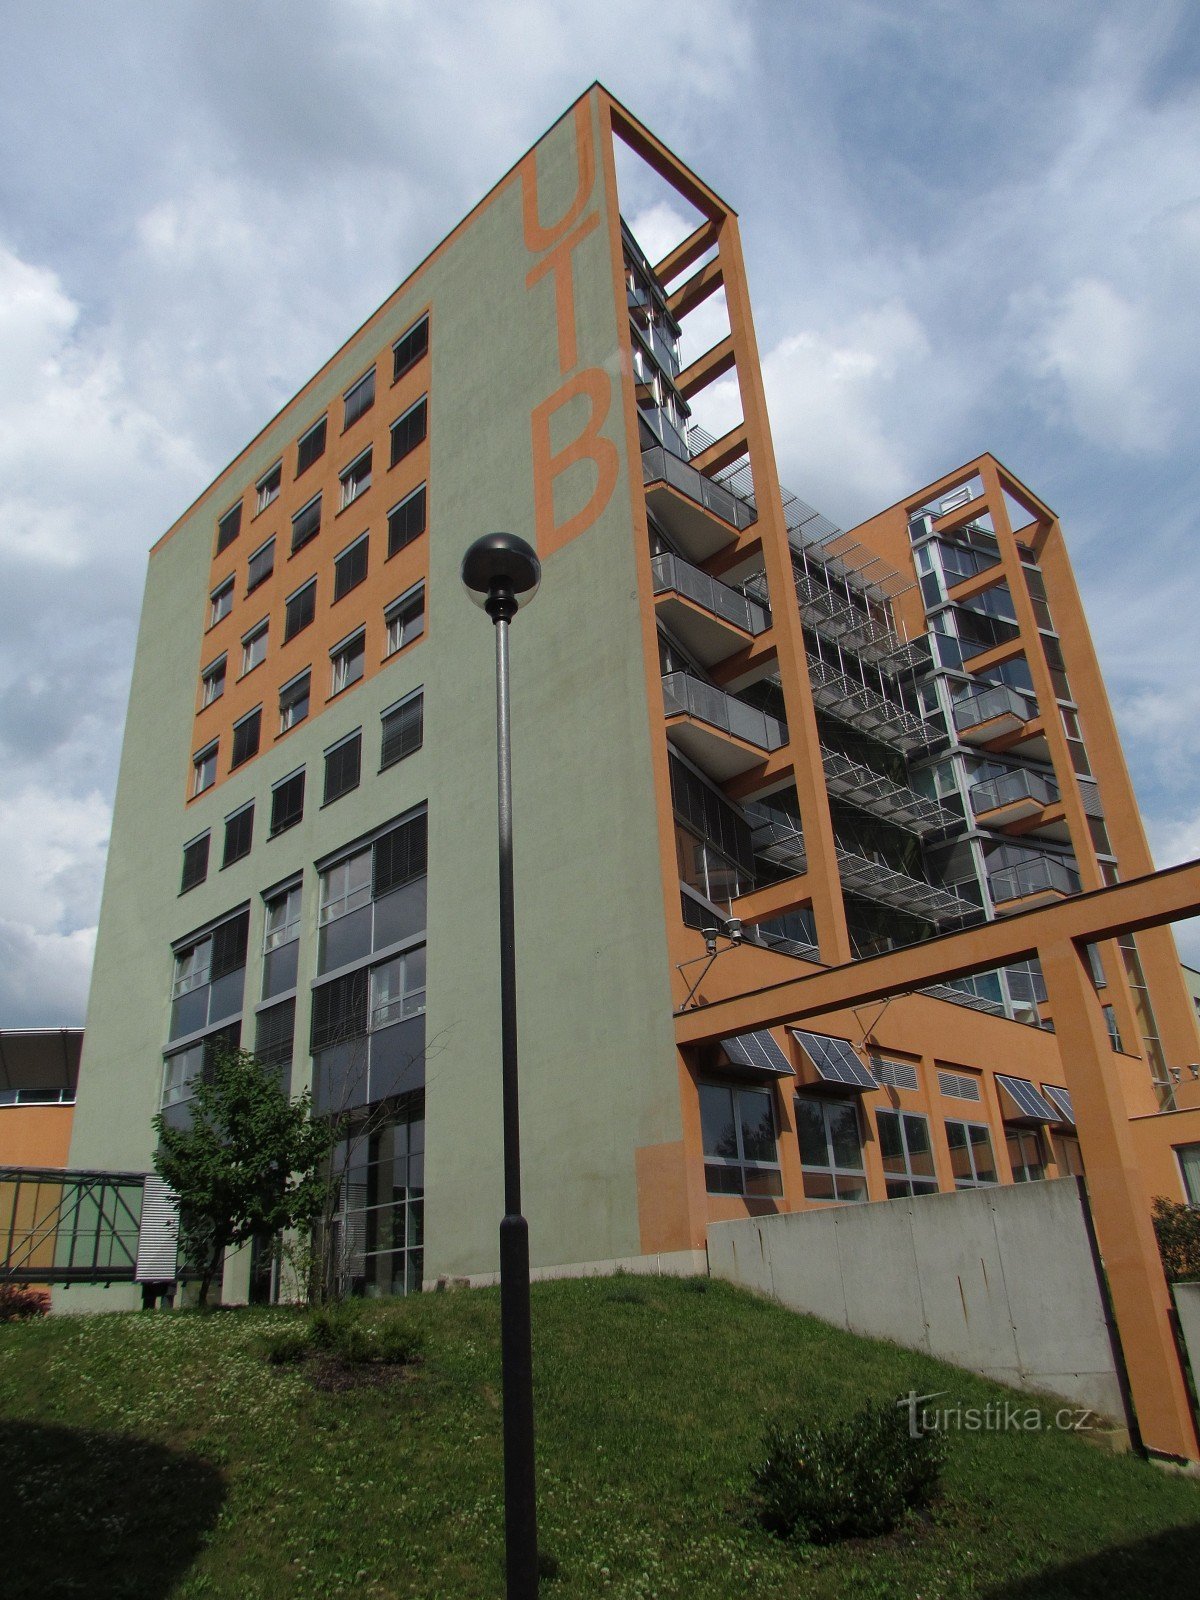 Zlín - TBU 大楼 - 应用信息学院